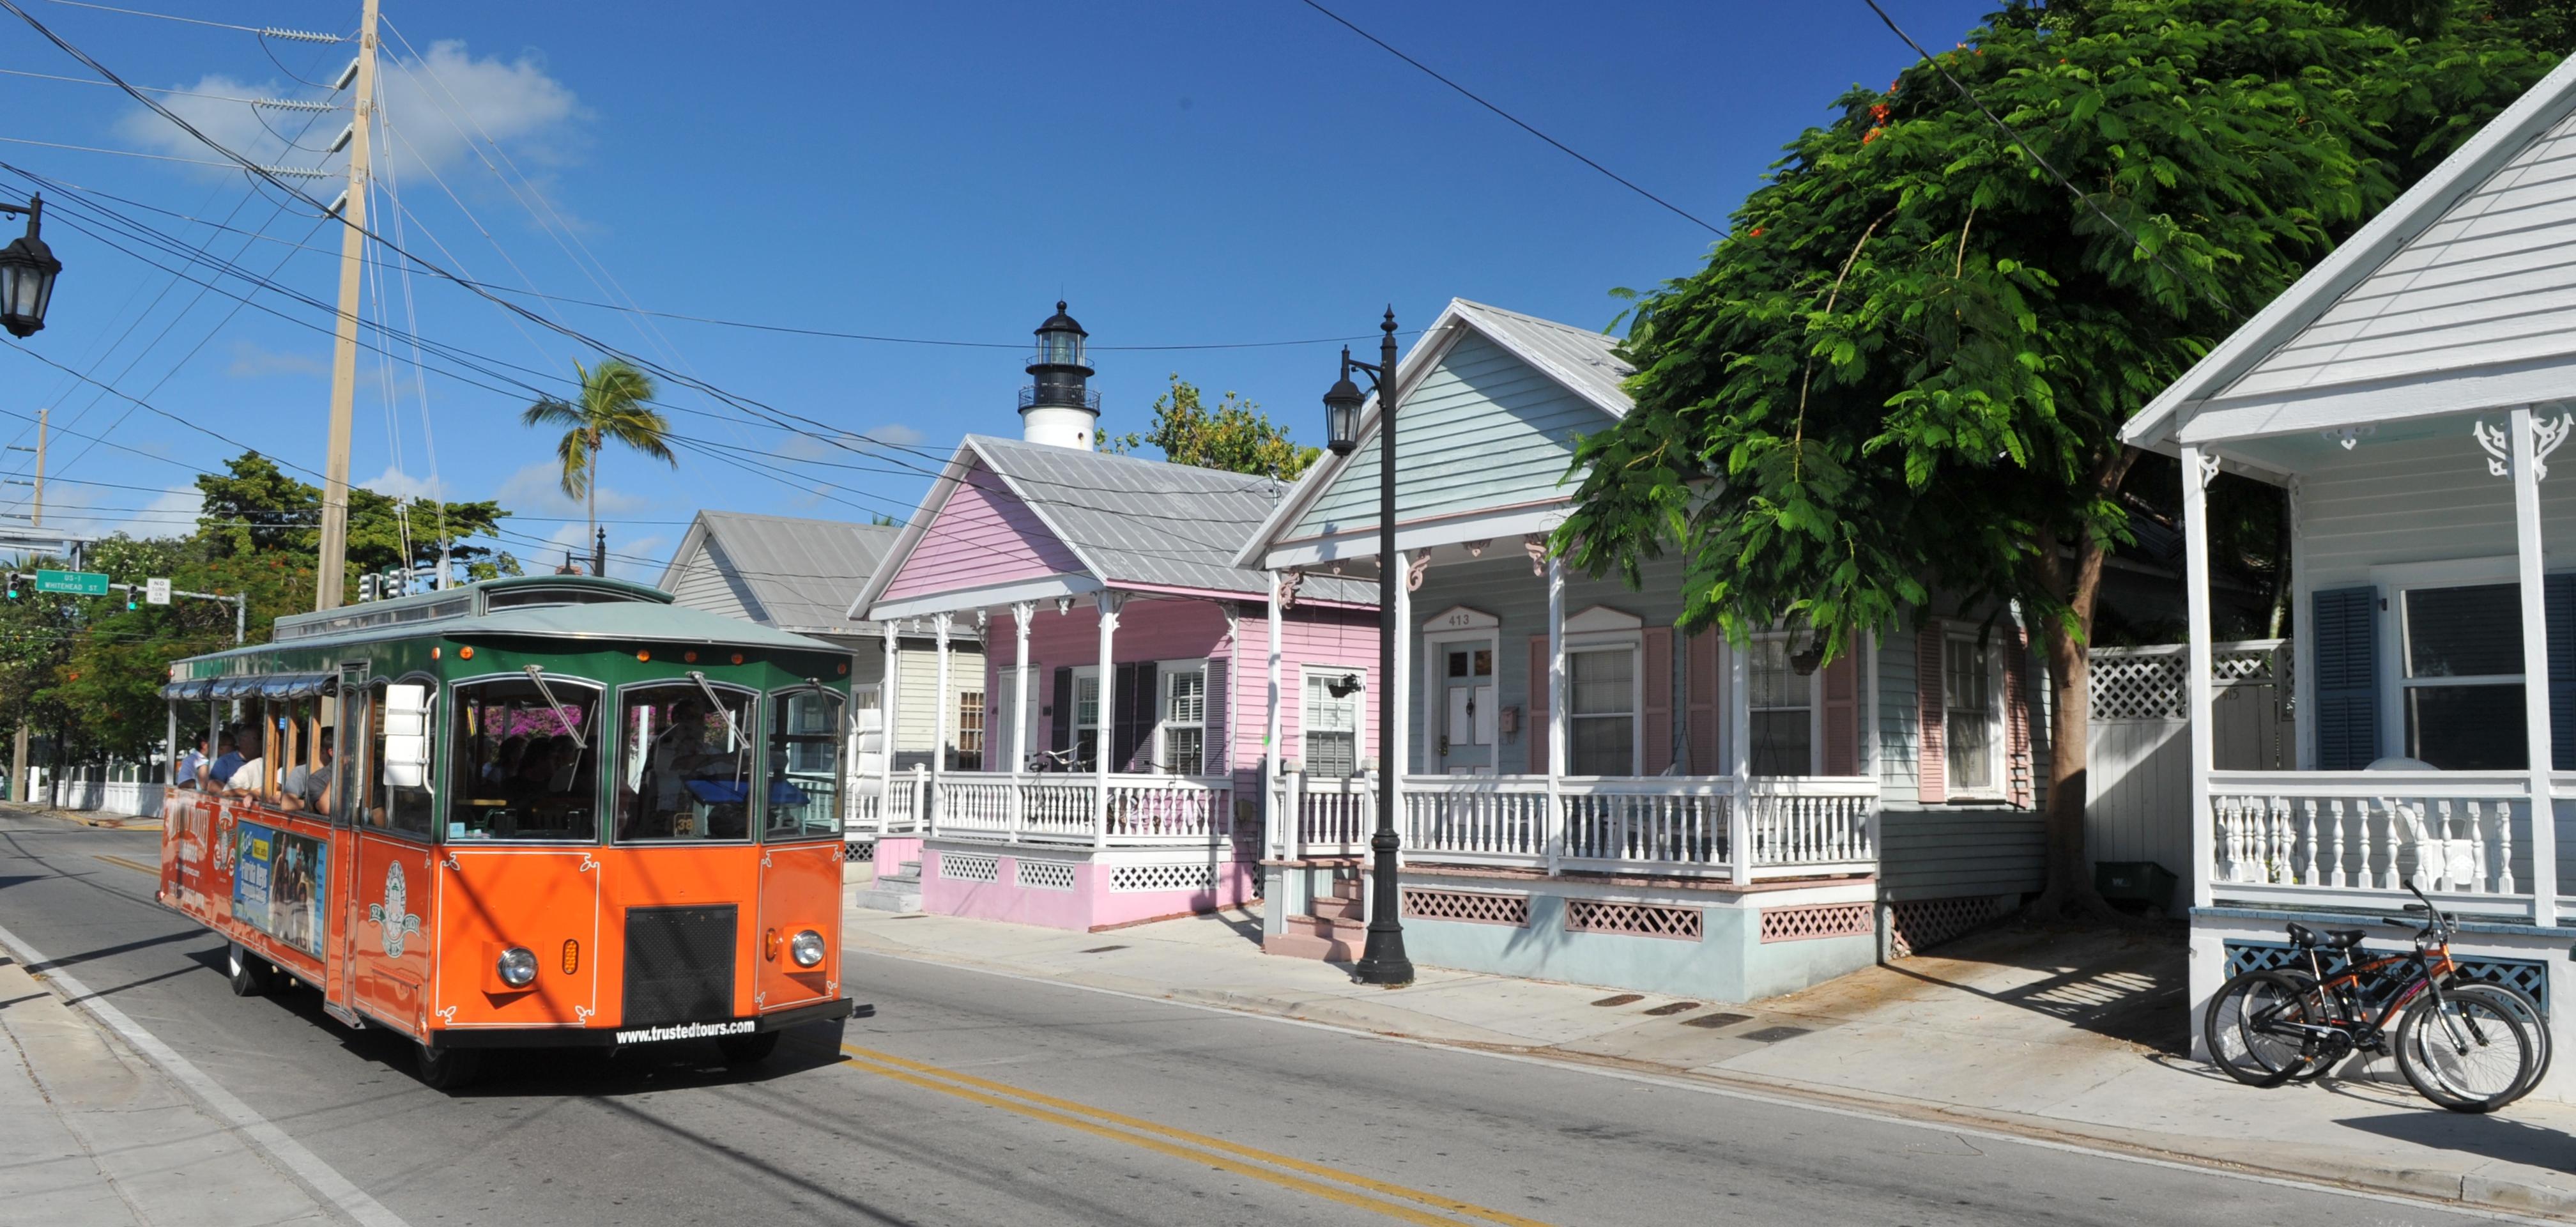 Tour de Key West en trolley bus – Arrêts multiples – Pass valable 2 jours